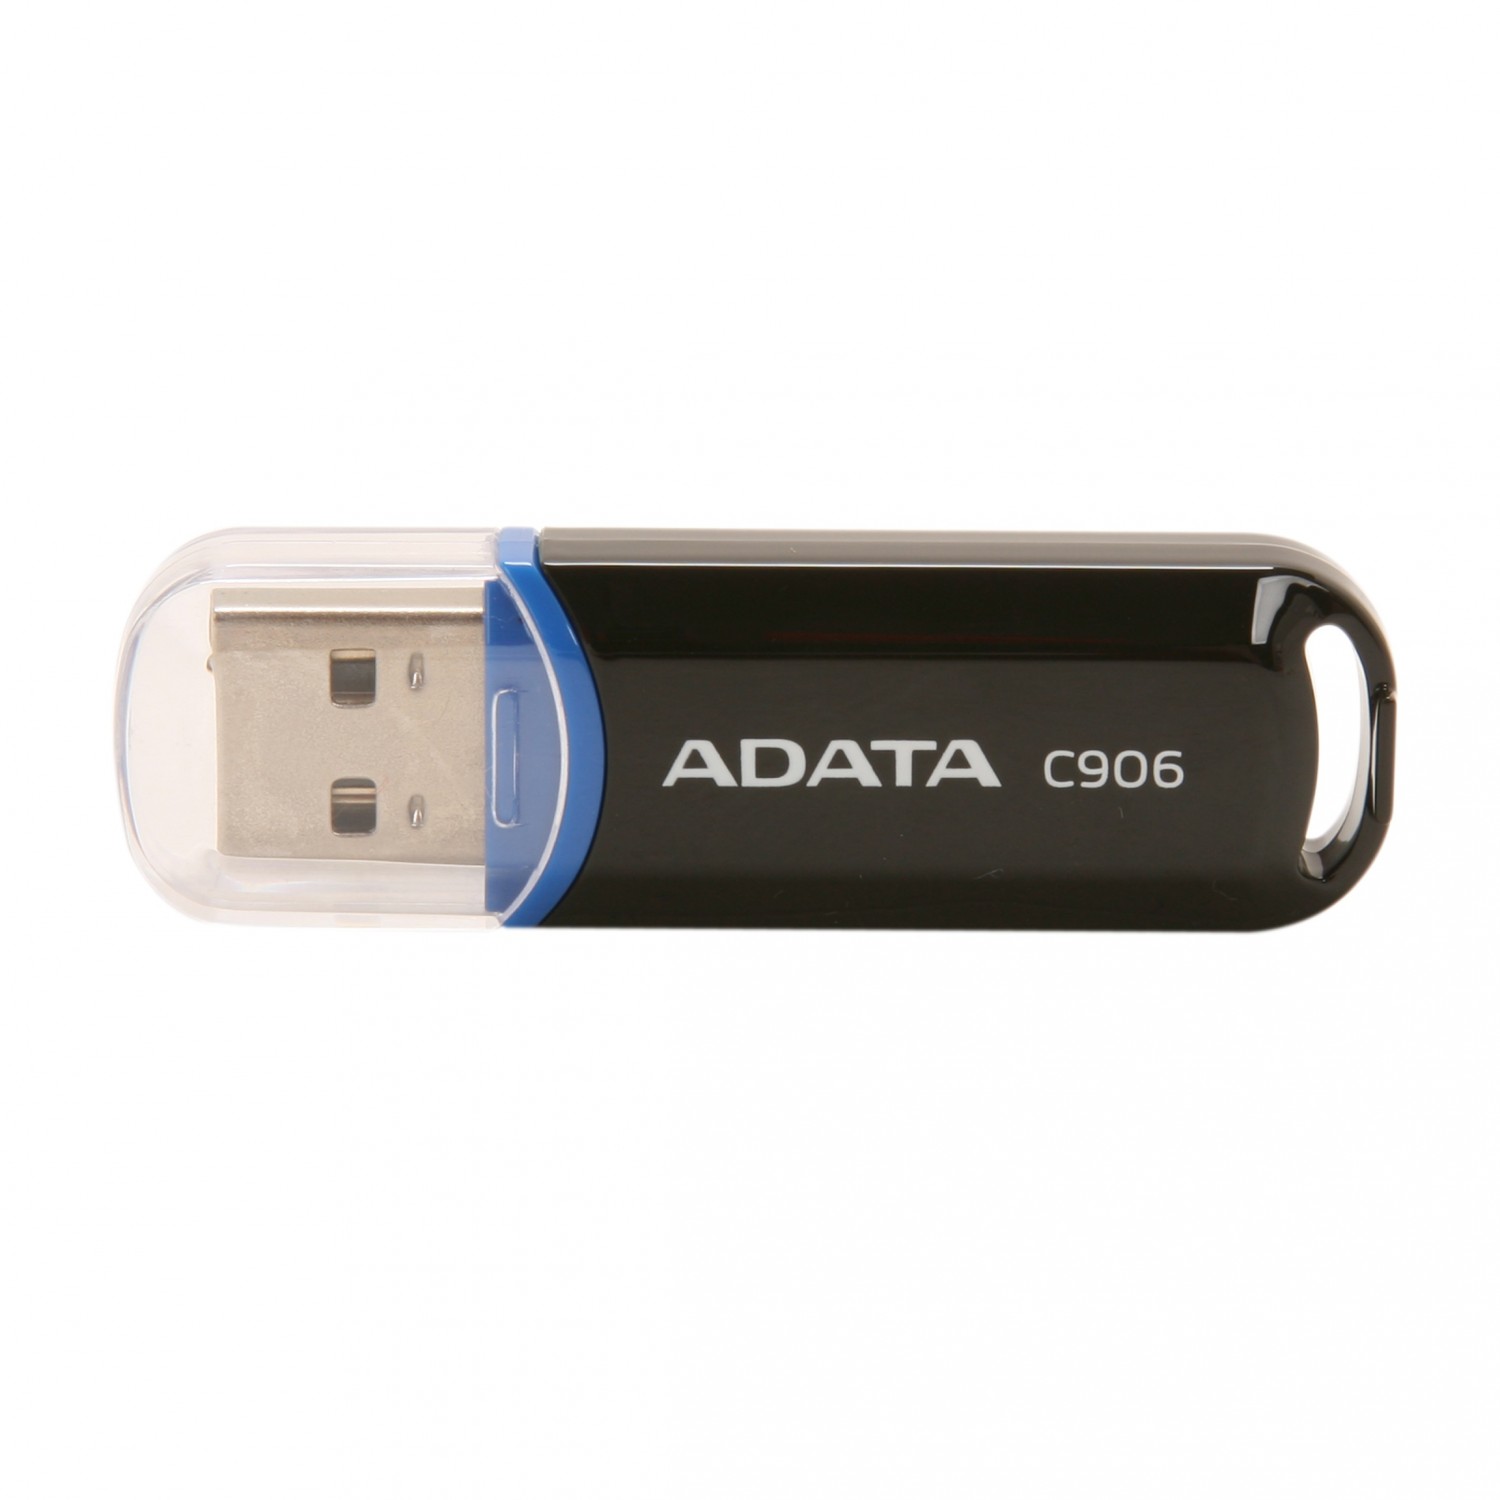 فلش مموری ADATA C906 - 8GB - Black/Blue